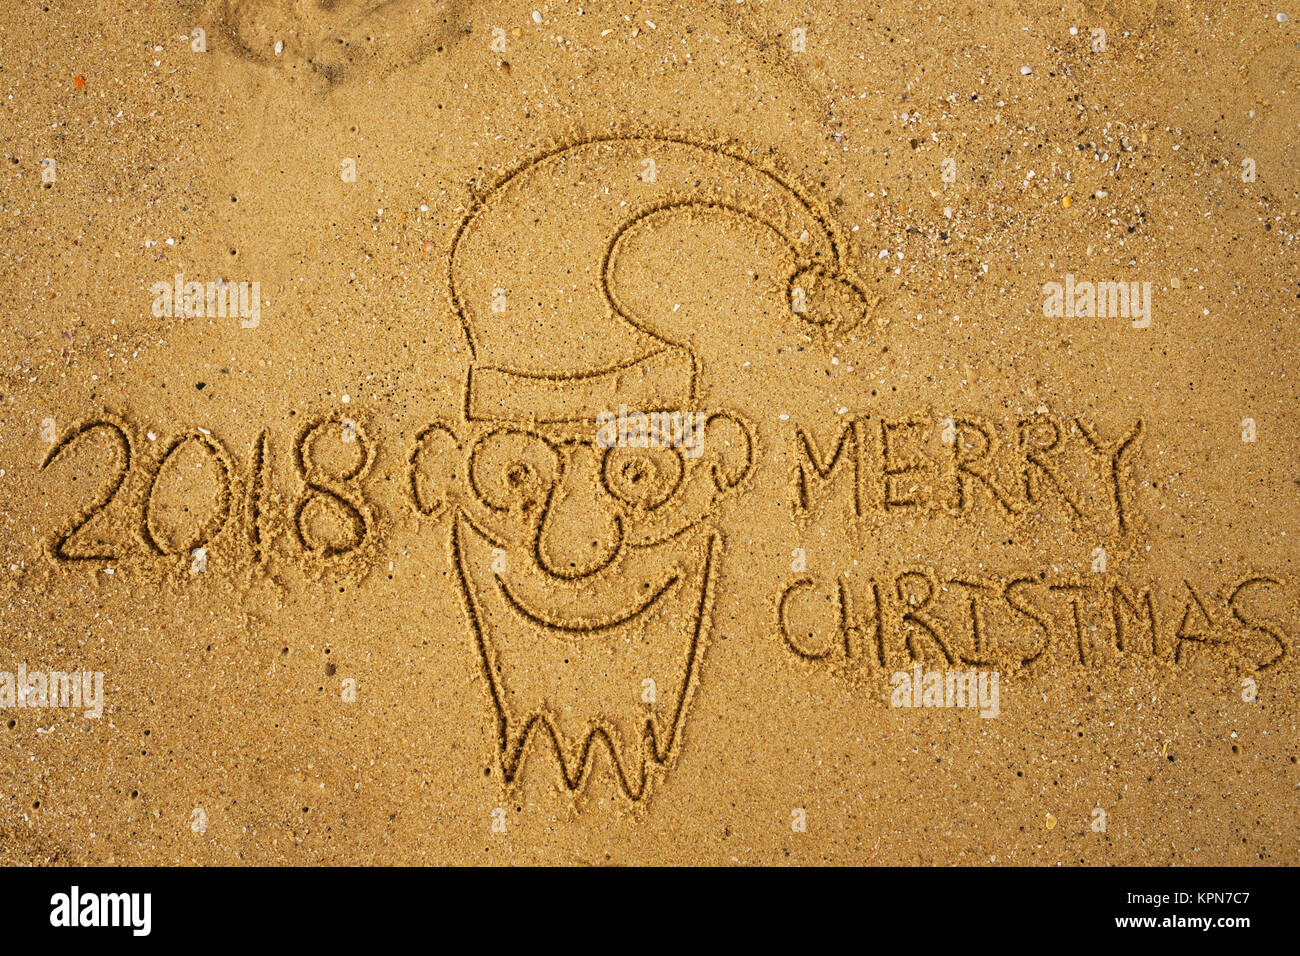 Joyeux Noël 2018 mots de l'écriture sur le sable de plage et drôle de visage de Père Noël. Banque D'Images